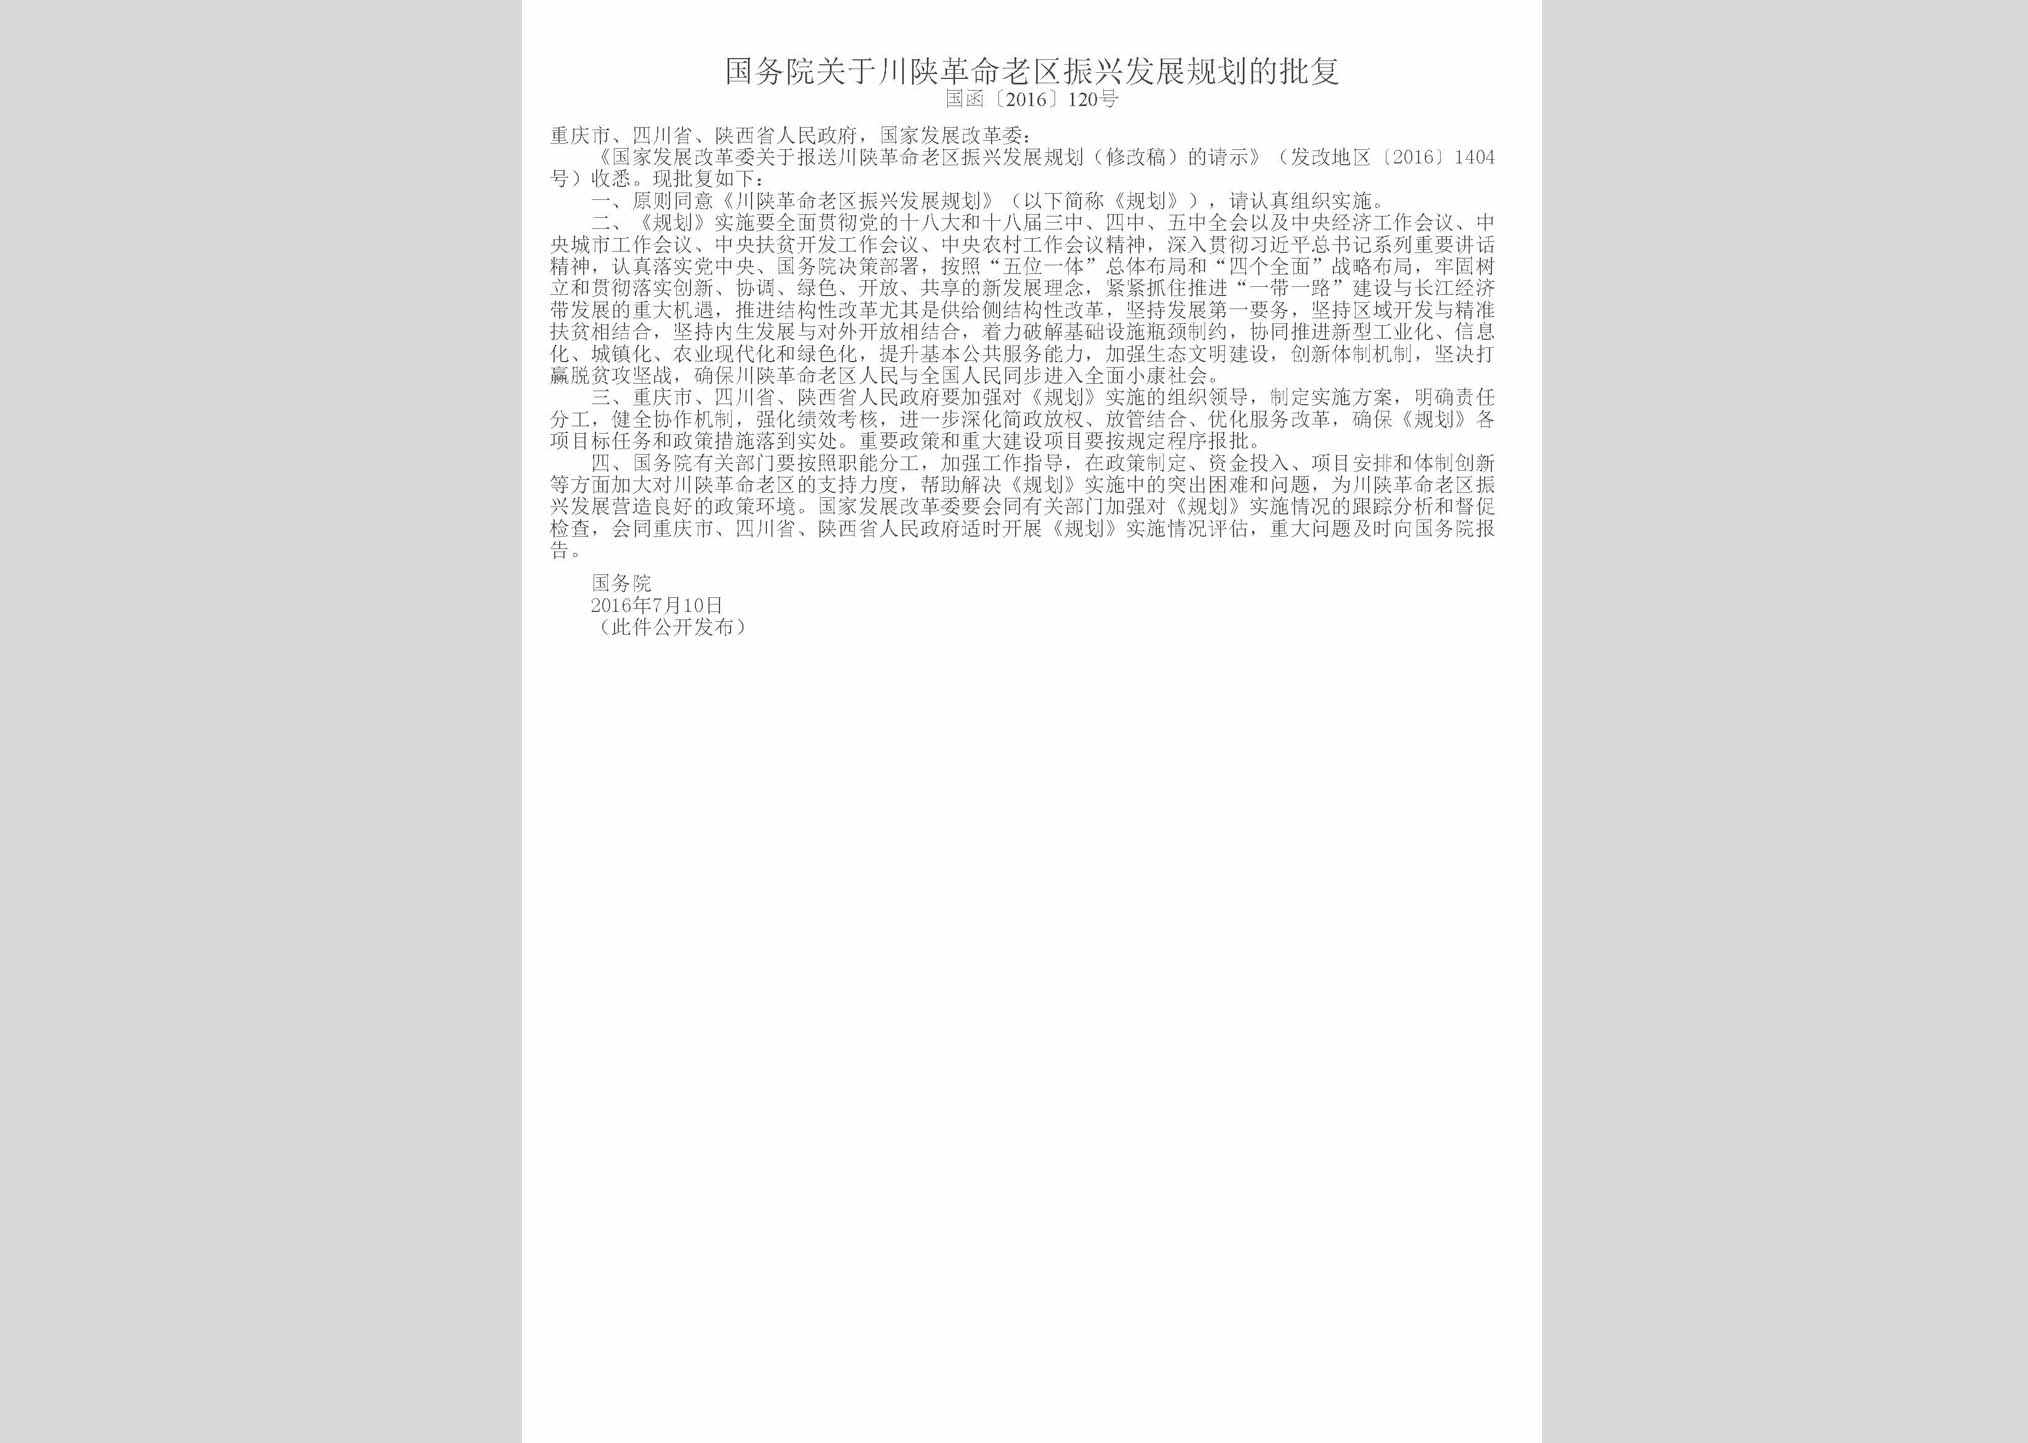 国函[2016]120号：国务院关于川陕革命老区振兴发展规划的批复